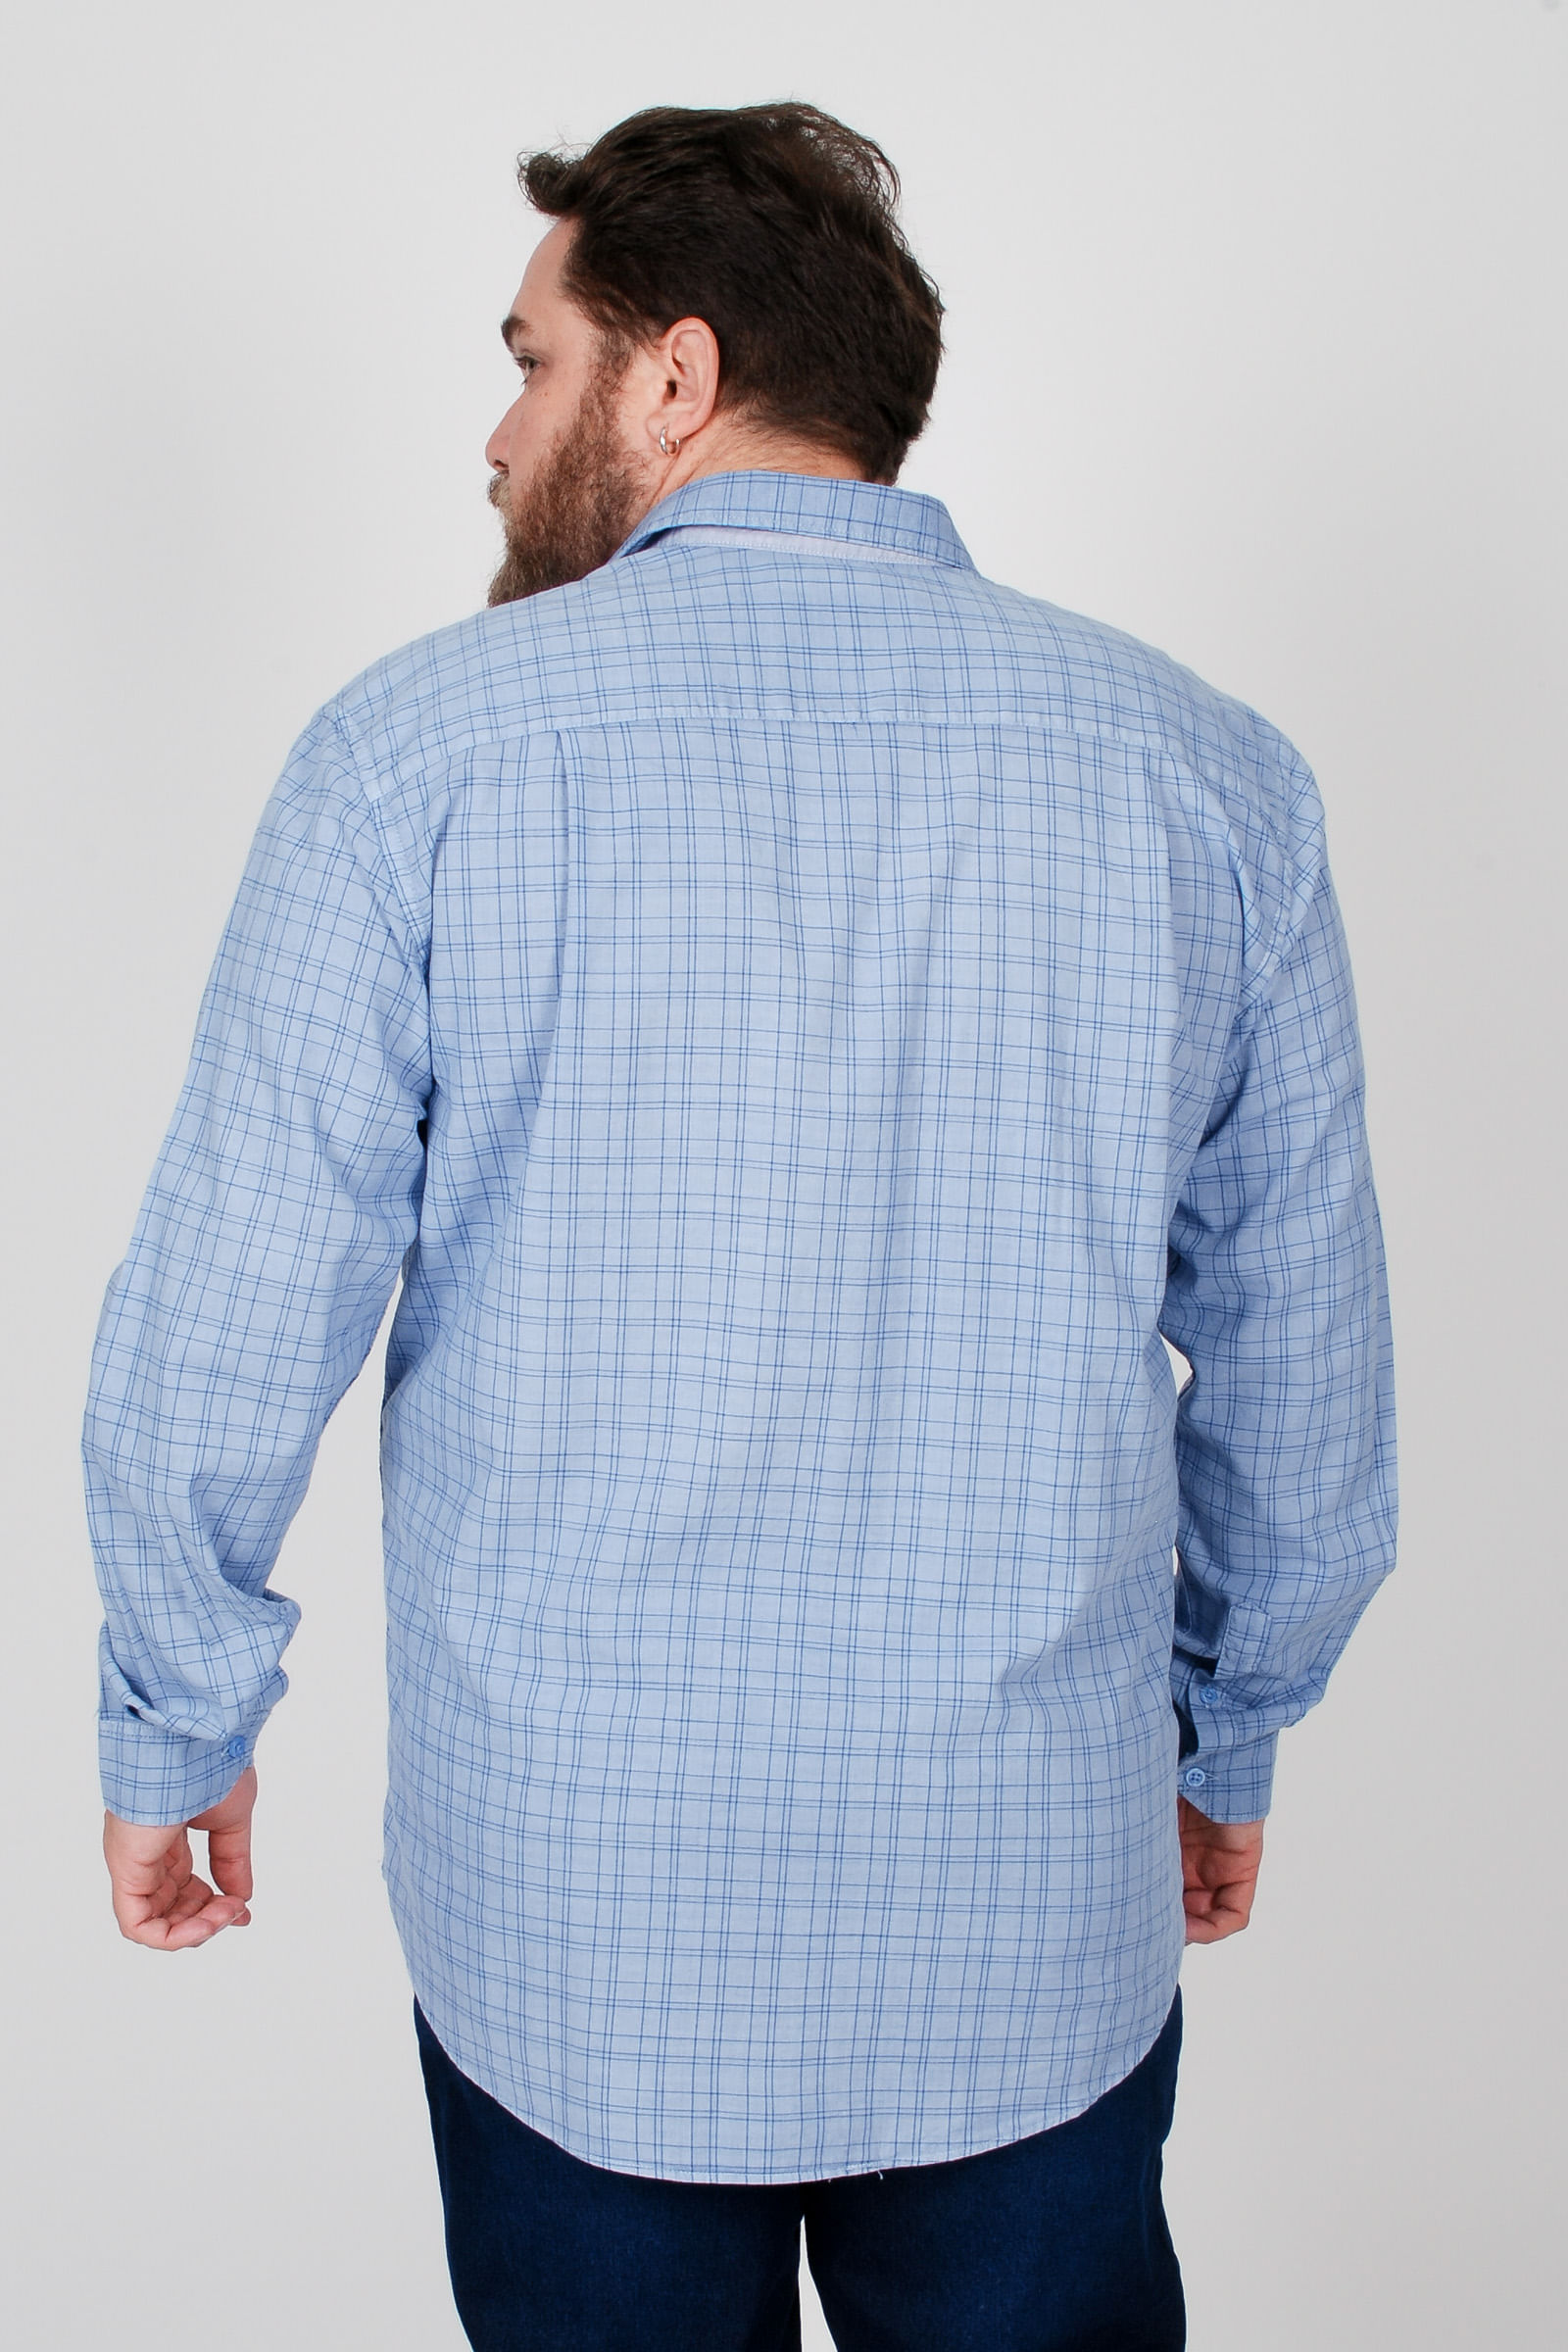 Camisa-manga-longa-tricoline-xadrez-plus-size